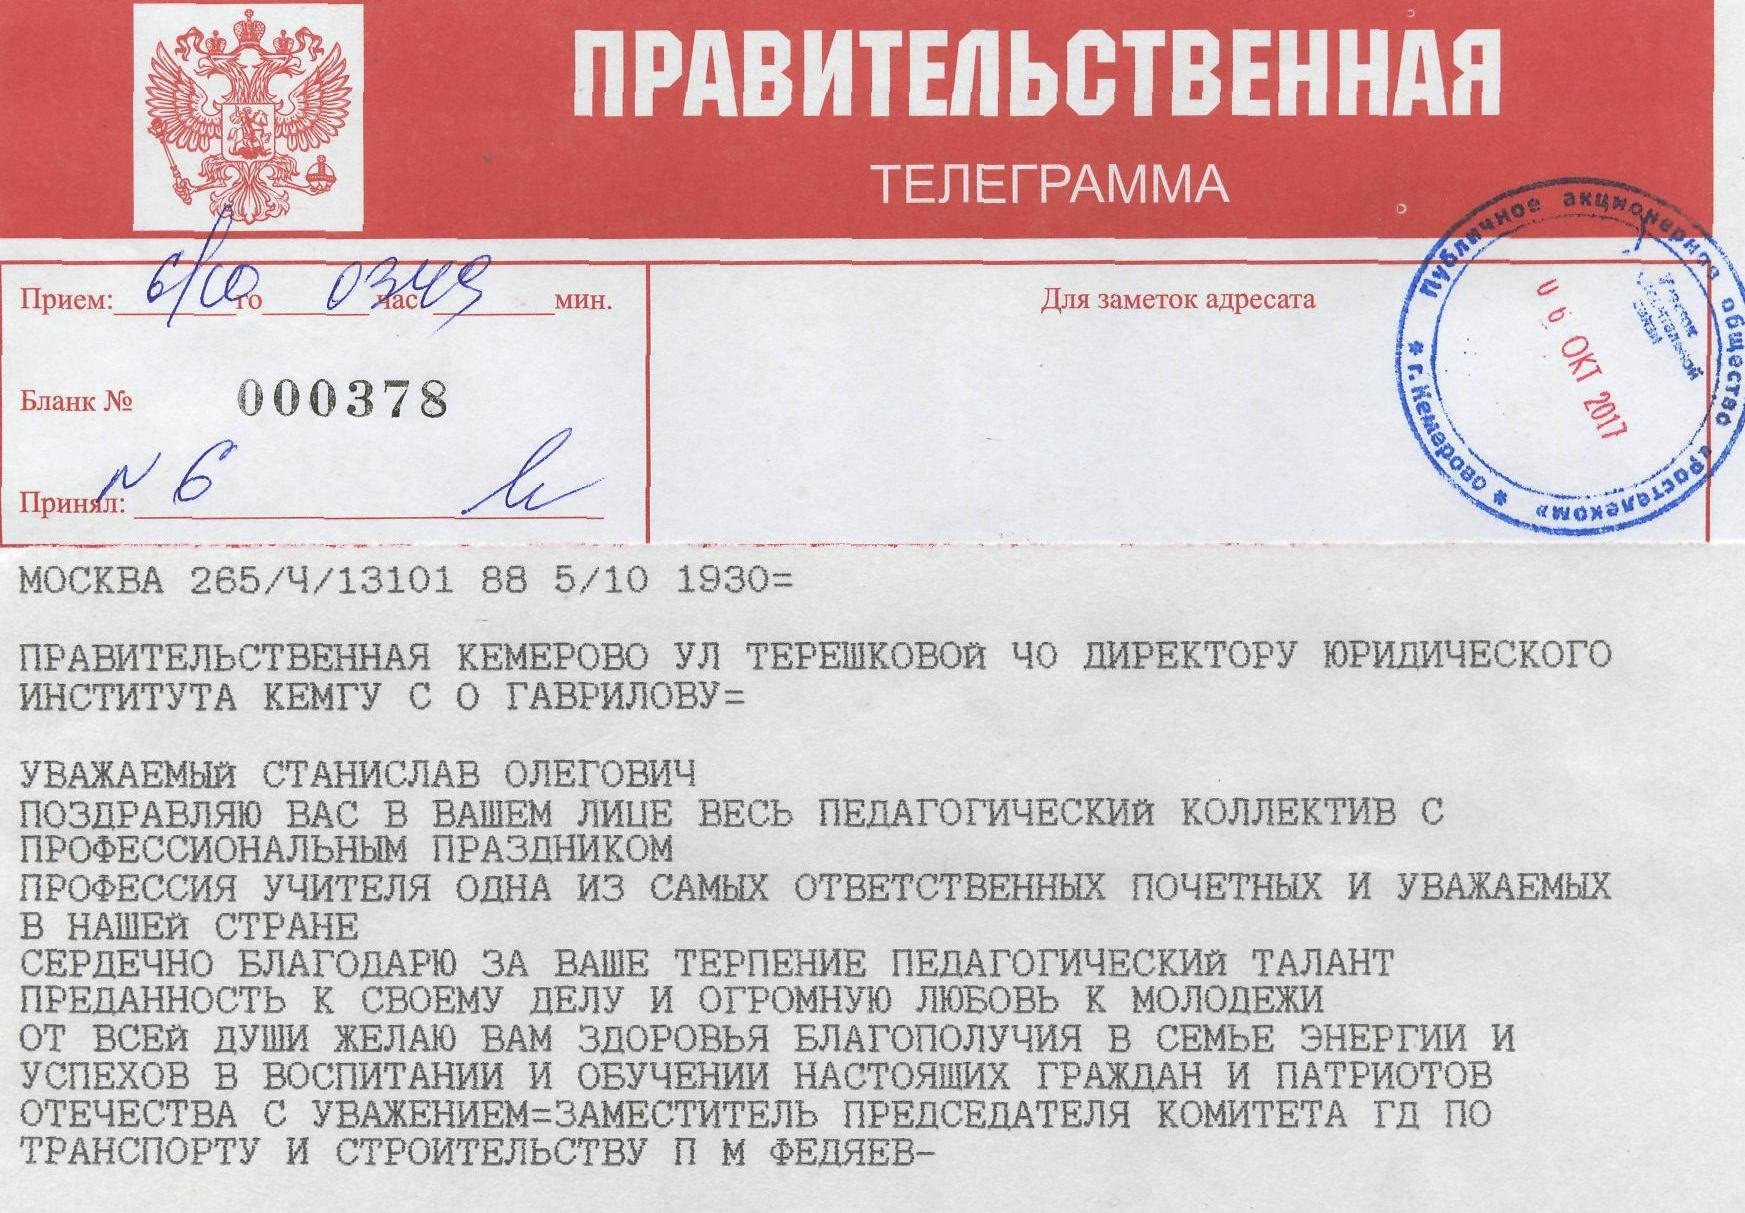 Скачать бланк телеграммы для почты россии фото 89